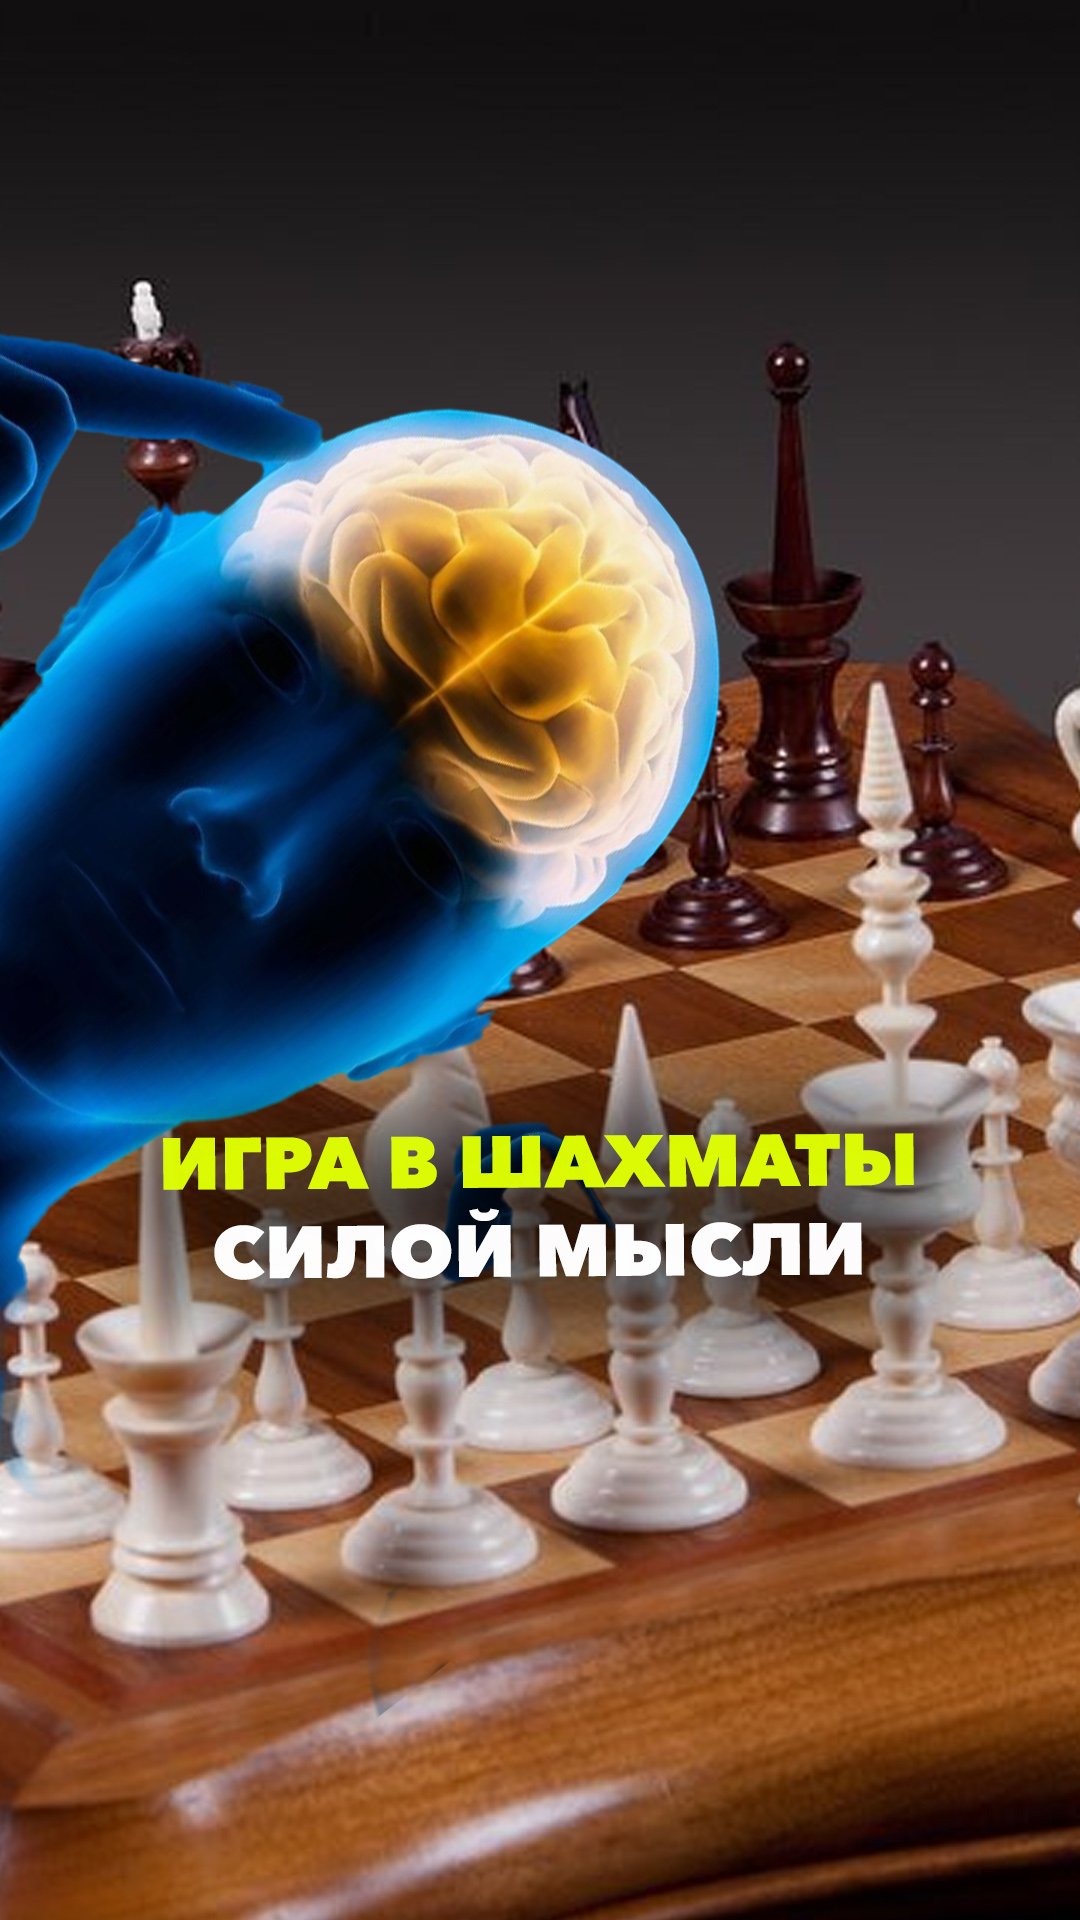 Первый человек с вживленным в мозг имплантом Neuralink начал играть в шахматы силой мысли